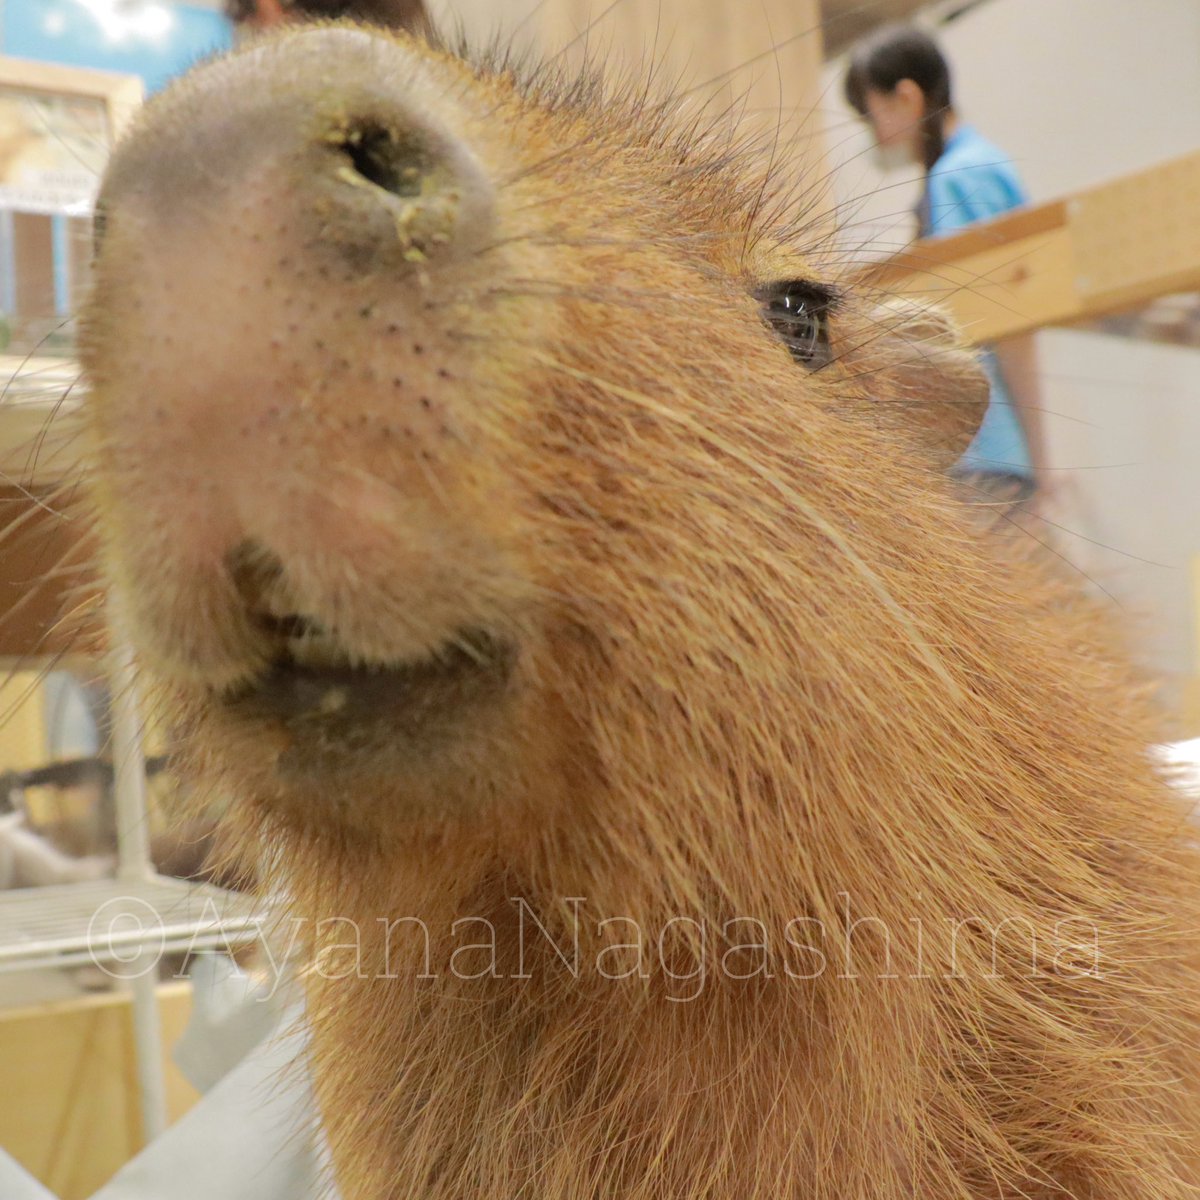 カピバラの口が好きです。 #カピバラ #capybara #もふもふふれあい動物園イオンモールつくば店